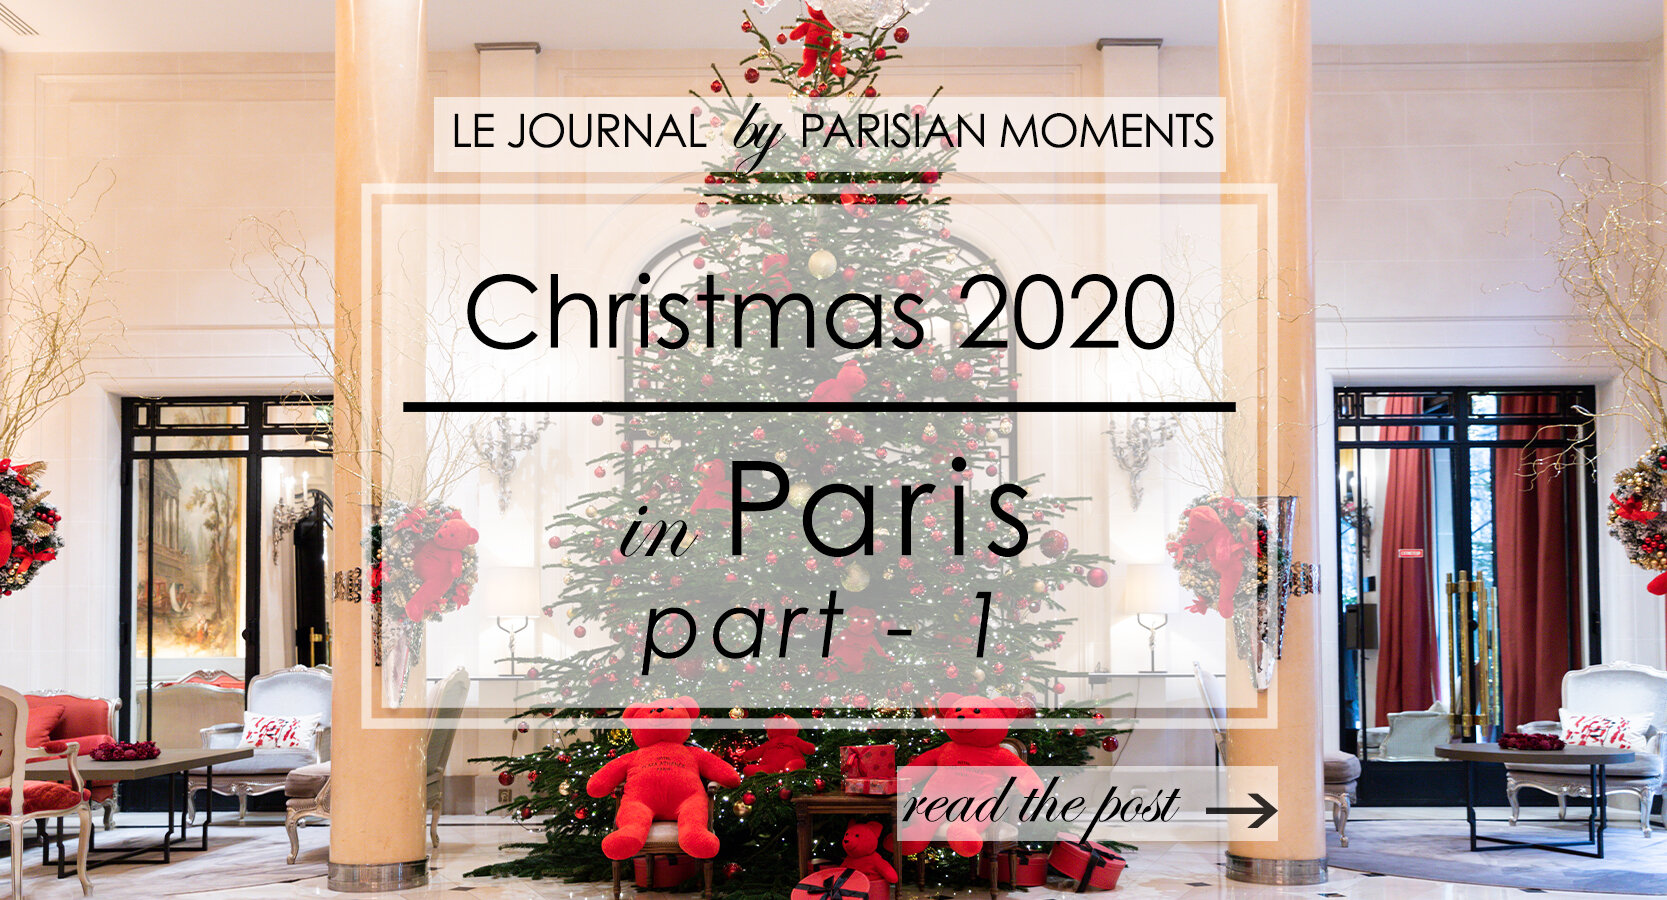 Christmas 2020 in Paris - part 1 — Parisian Moments